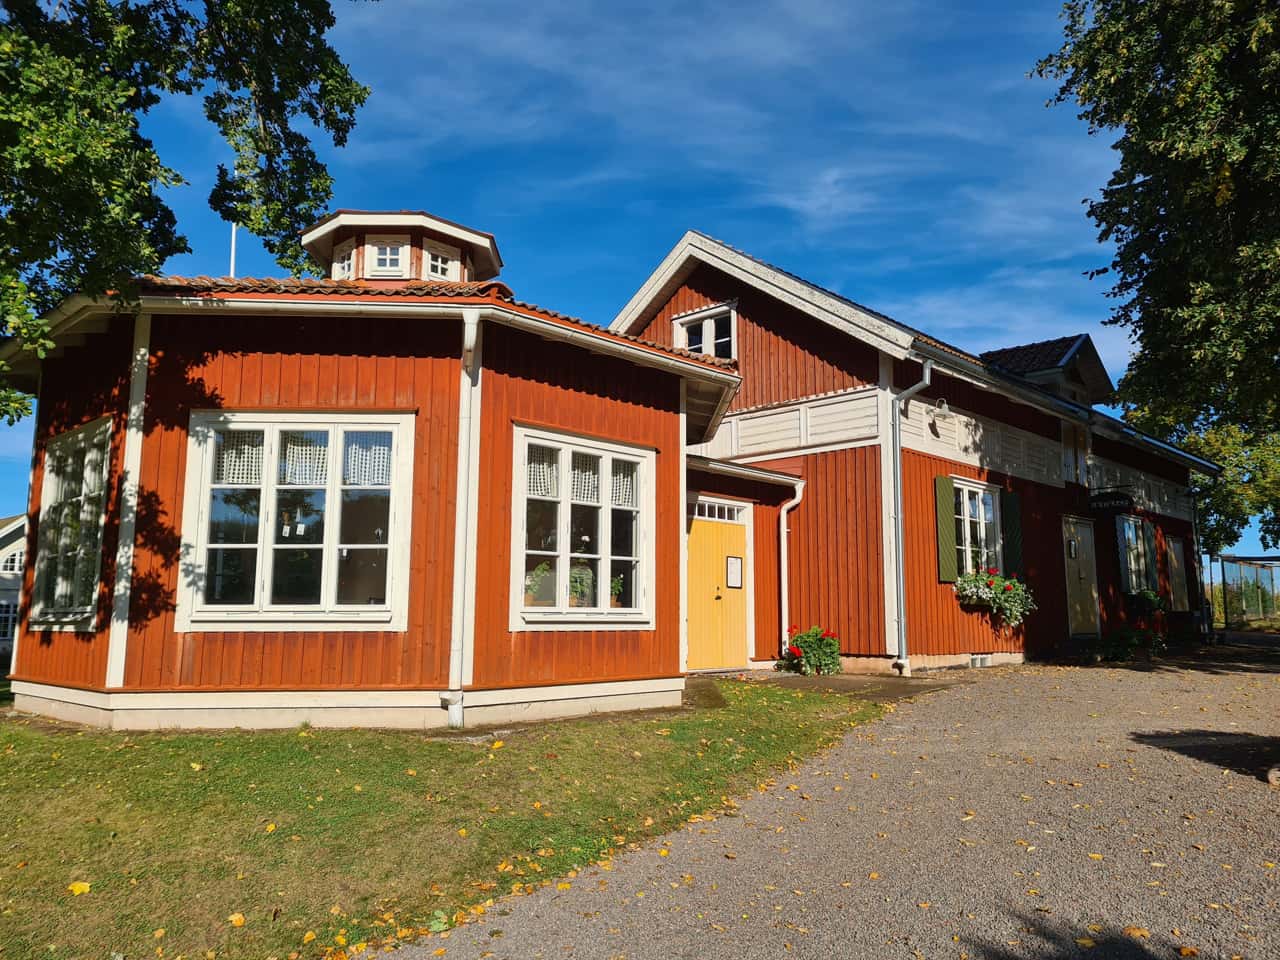 Marbåcka, das Haus von Selma Lagerlöf in Sunne in der schwedischen Provinz Värmland 